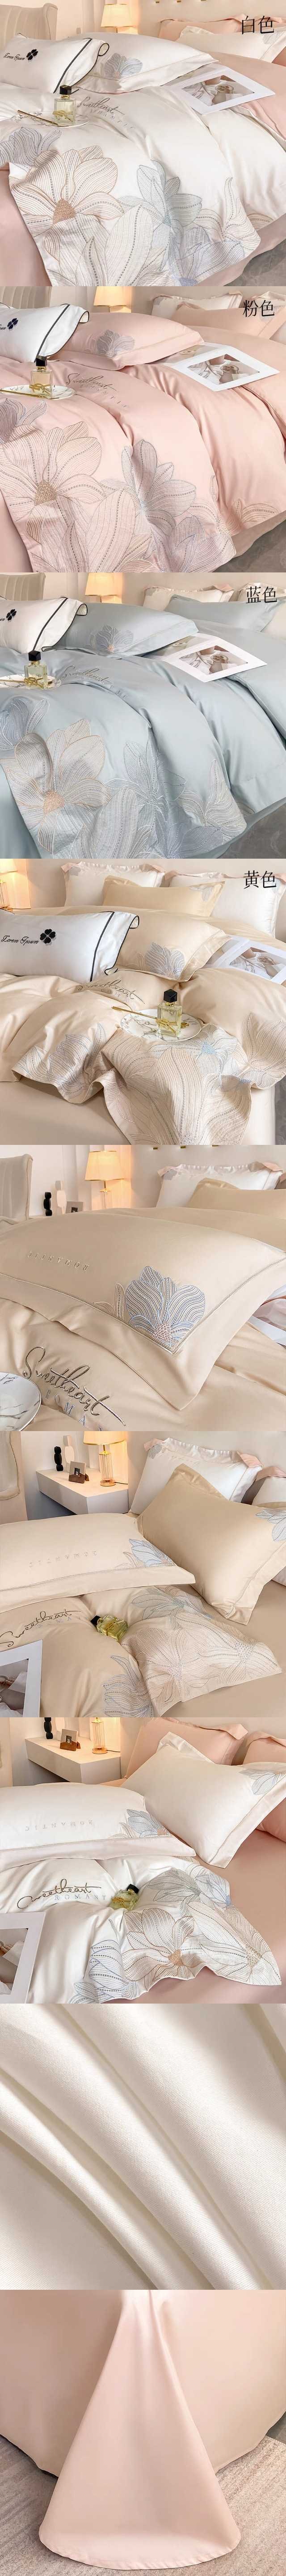 【中国直邮】Lullabuy 赫本风刺绣80支长绒棉四件套 床上用品床单被套枕套(床单*1+被套*1+枕套*2)  白色 King Size